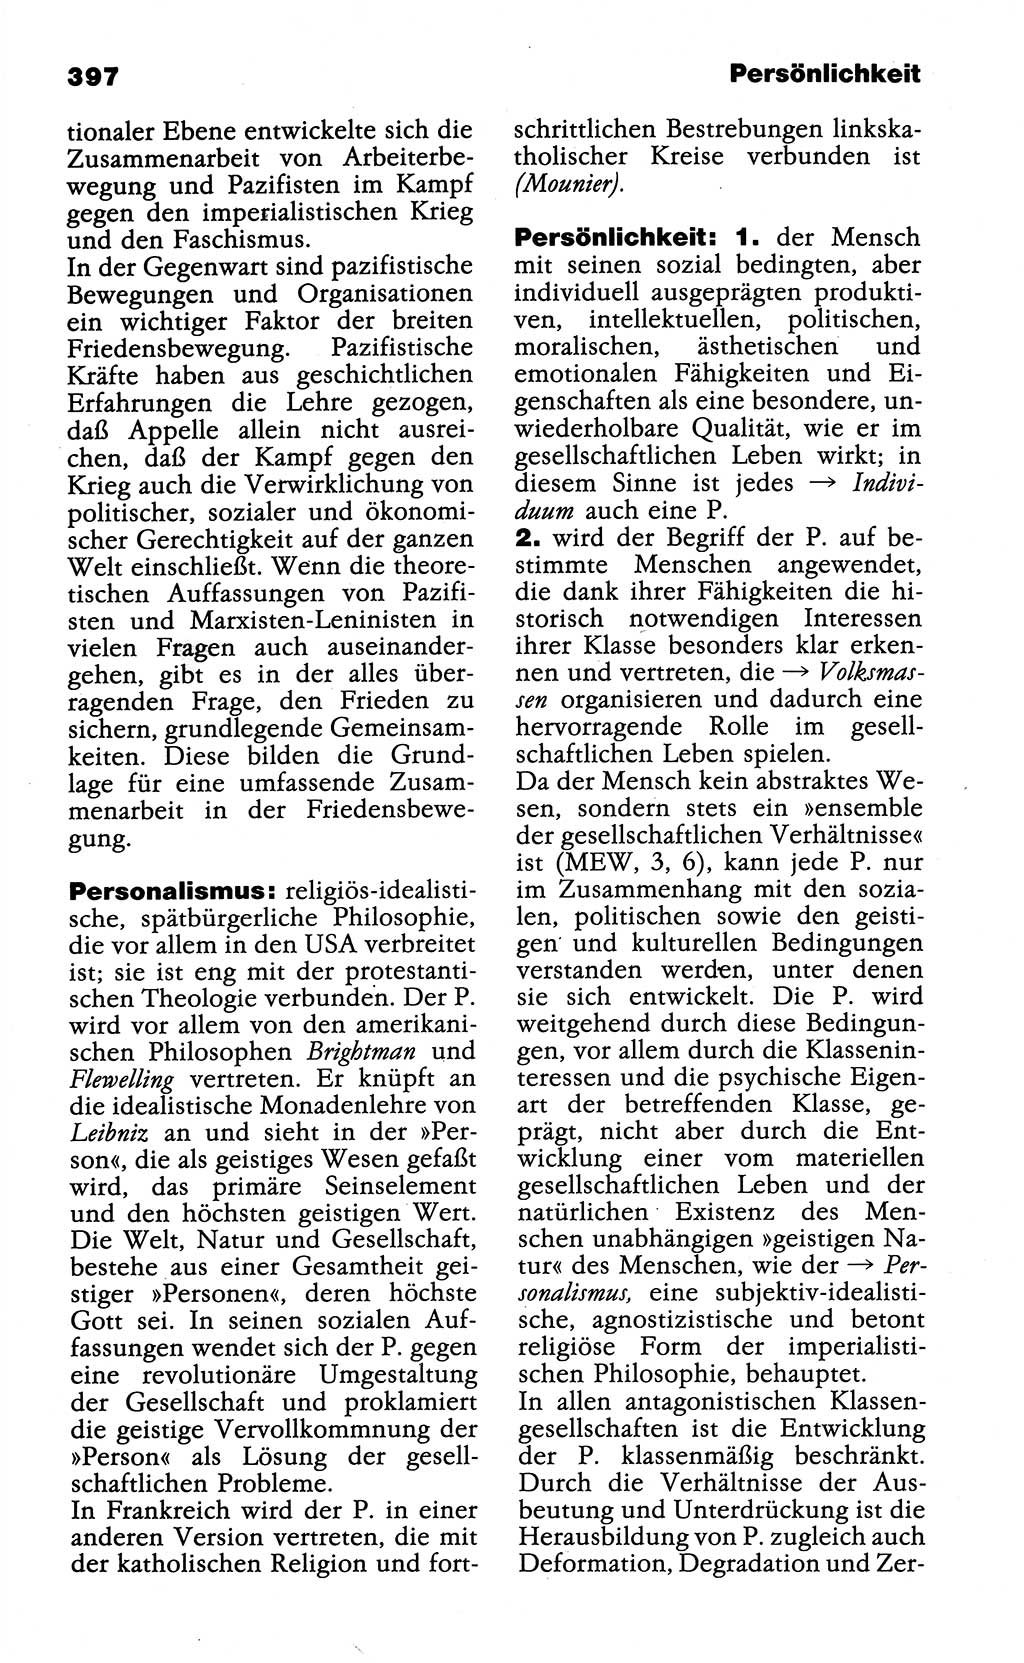 Wörterbuch der marxistisch-leninistischen Philosophie [Deutsche Demokratische Republik (DDR)] 1985, Seite 397 (Wb. ML Phil. DDR 1985, S. 397)